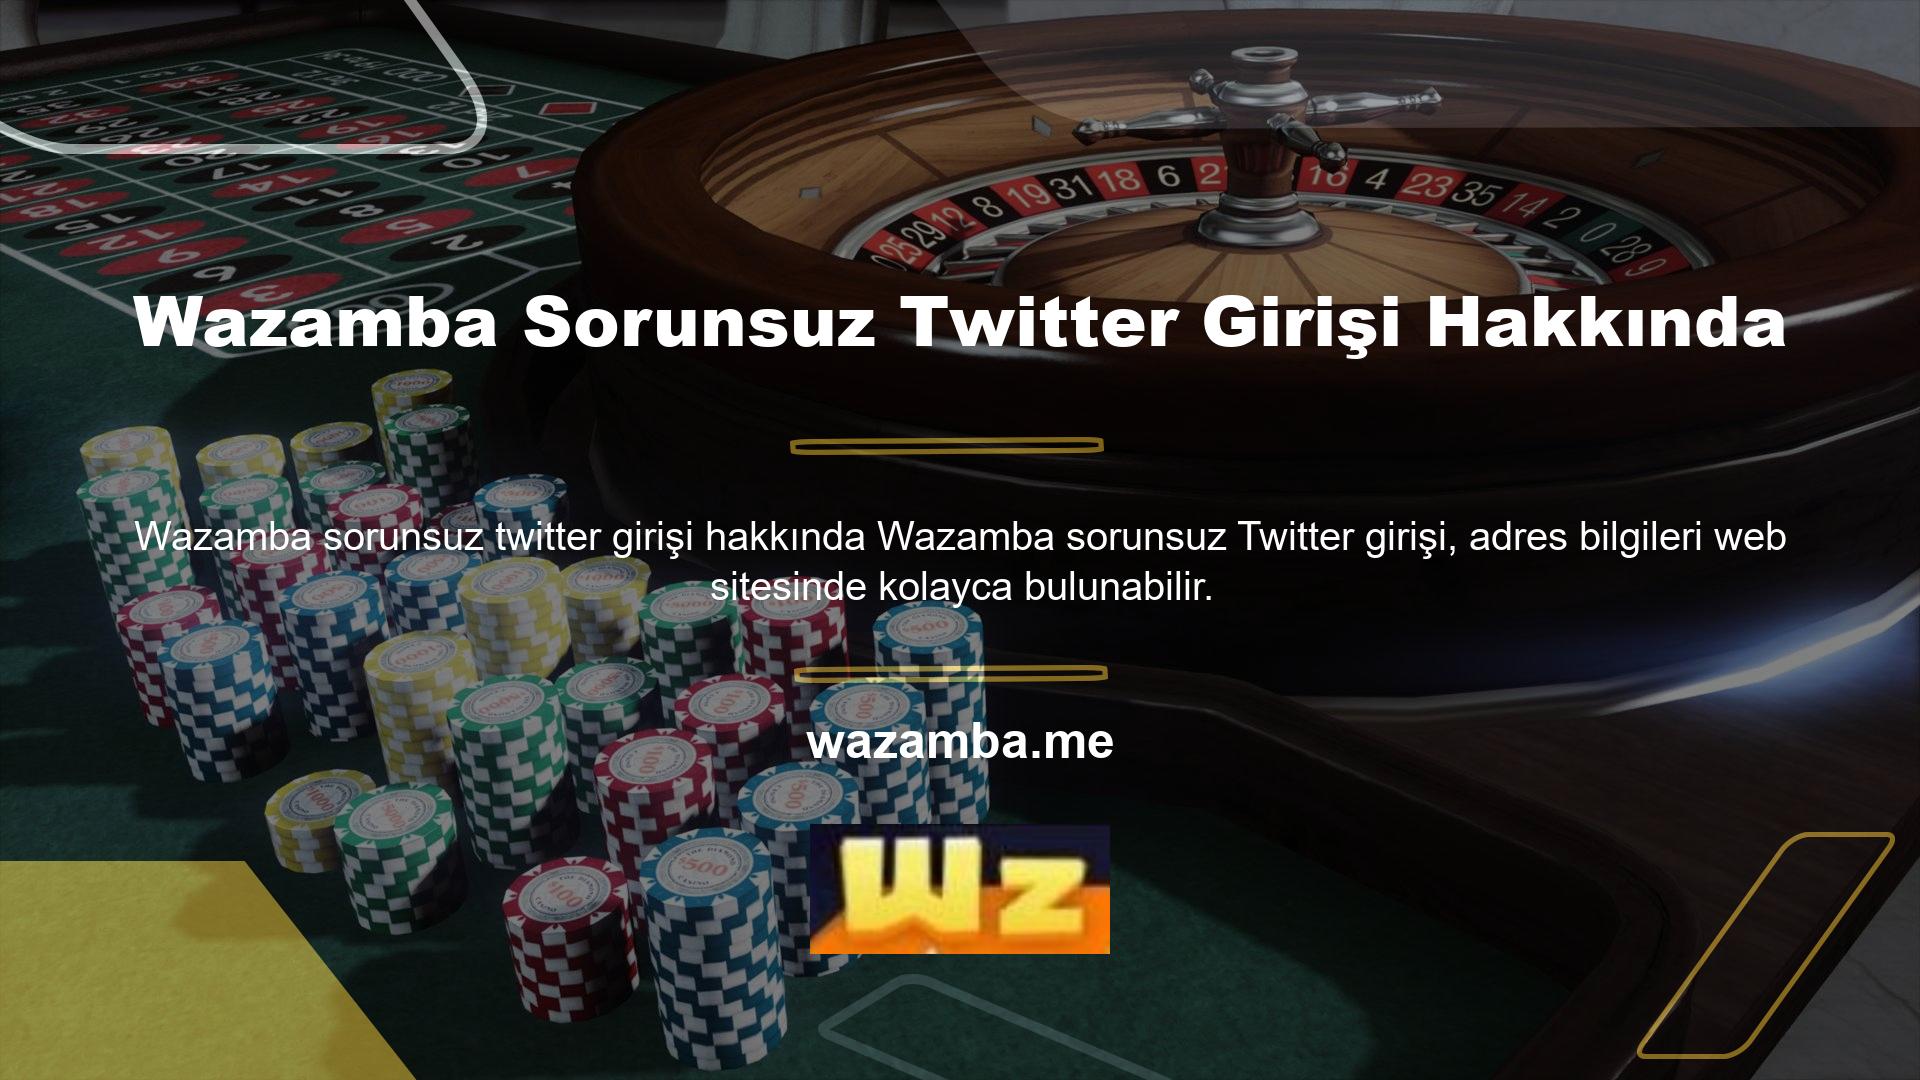 Kullanılan tüm sosyal medya hesaplarına ilişkin bilgiler Wazamba web sitesinin ana sayfasında yer almaktadır